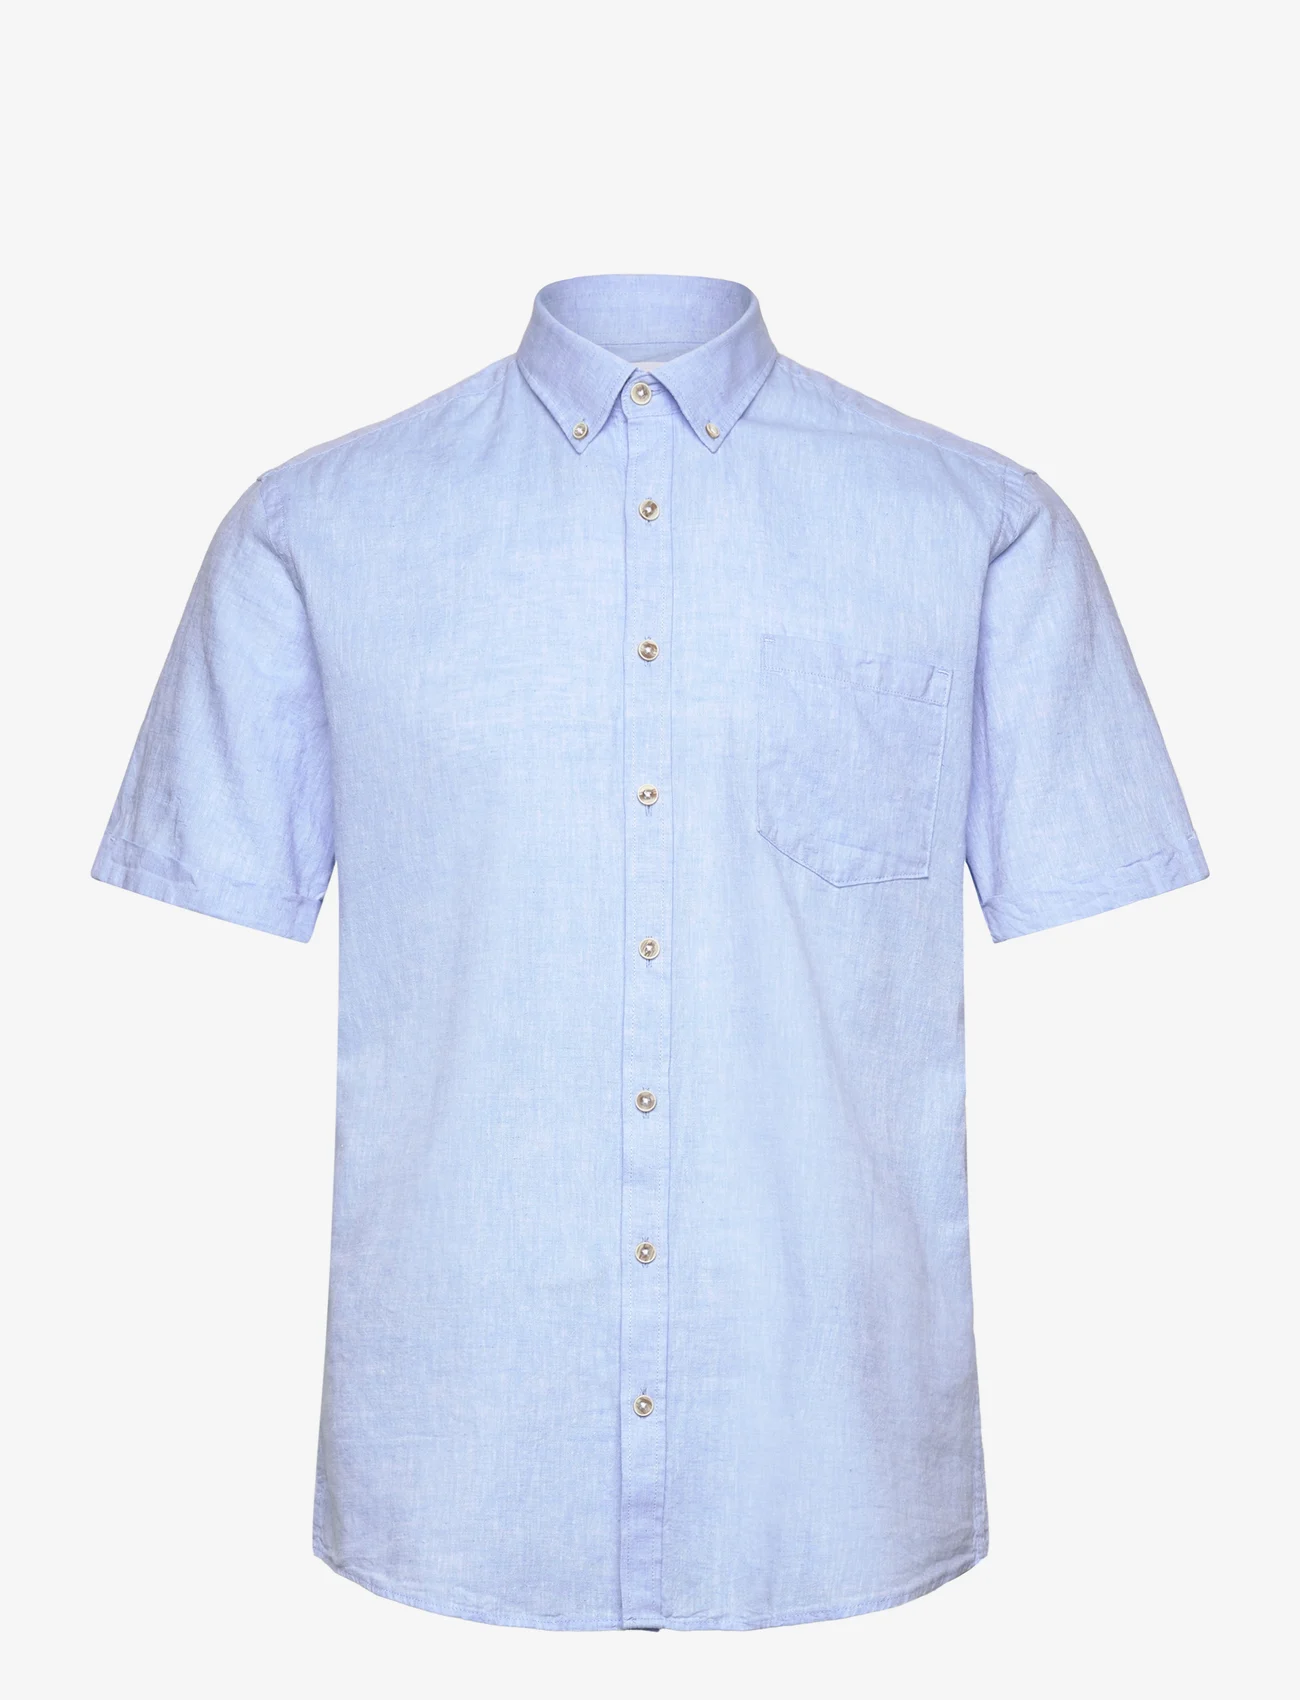 Lindbergh - Cotton/linen shirt S/S - linskjorter - sky blue - 0